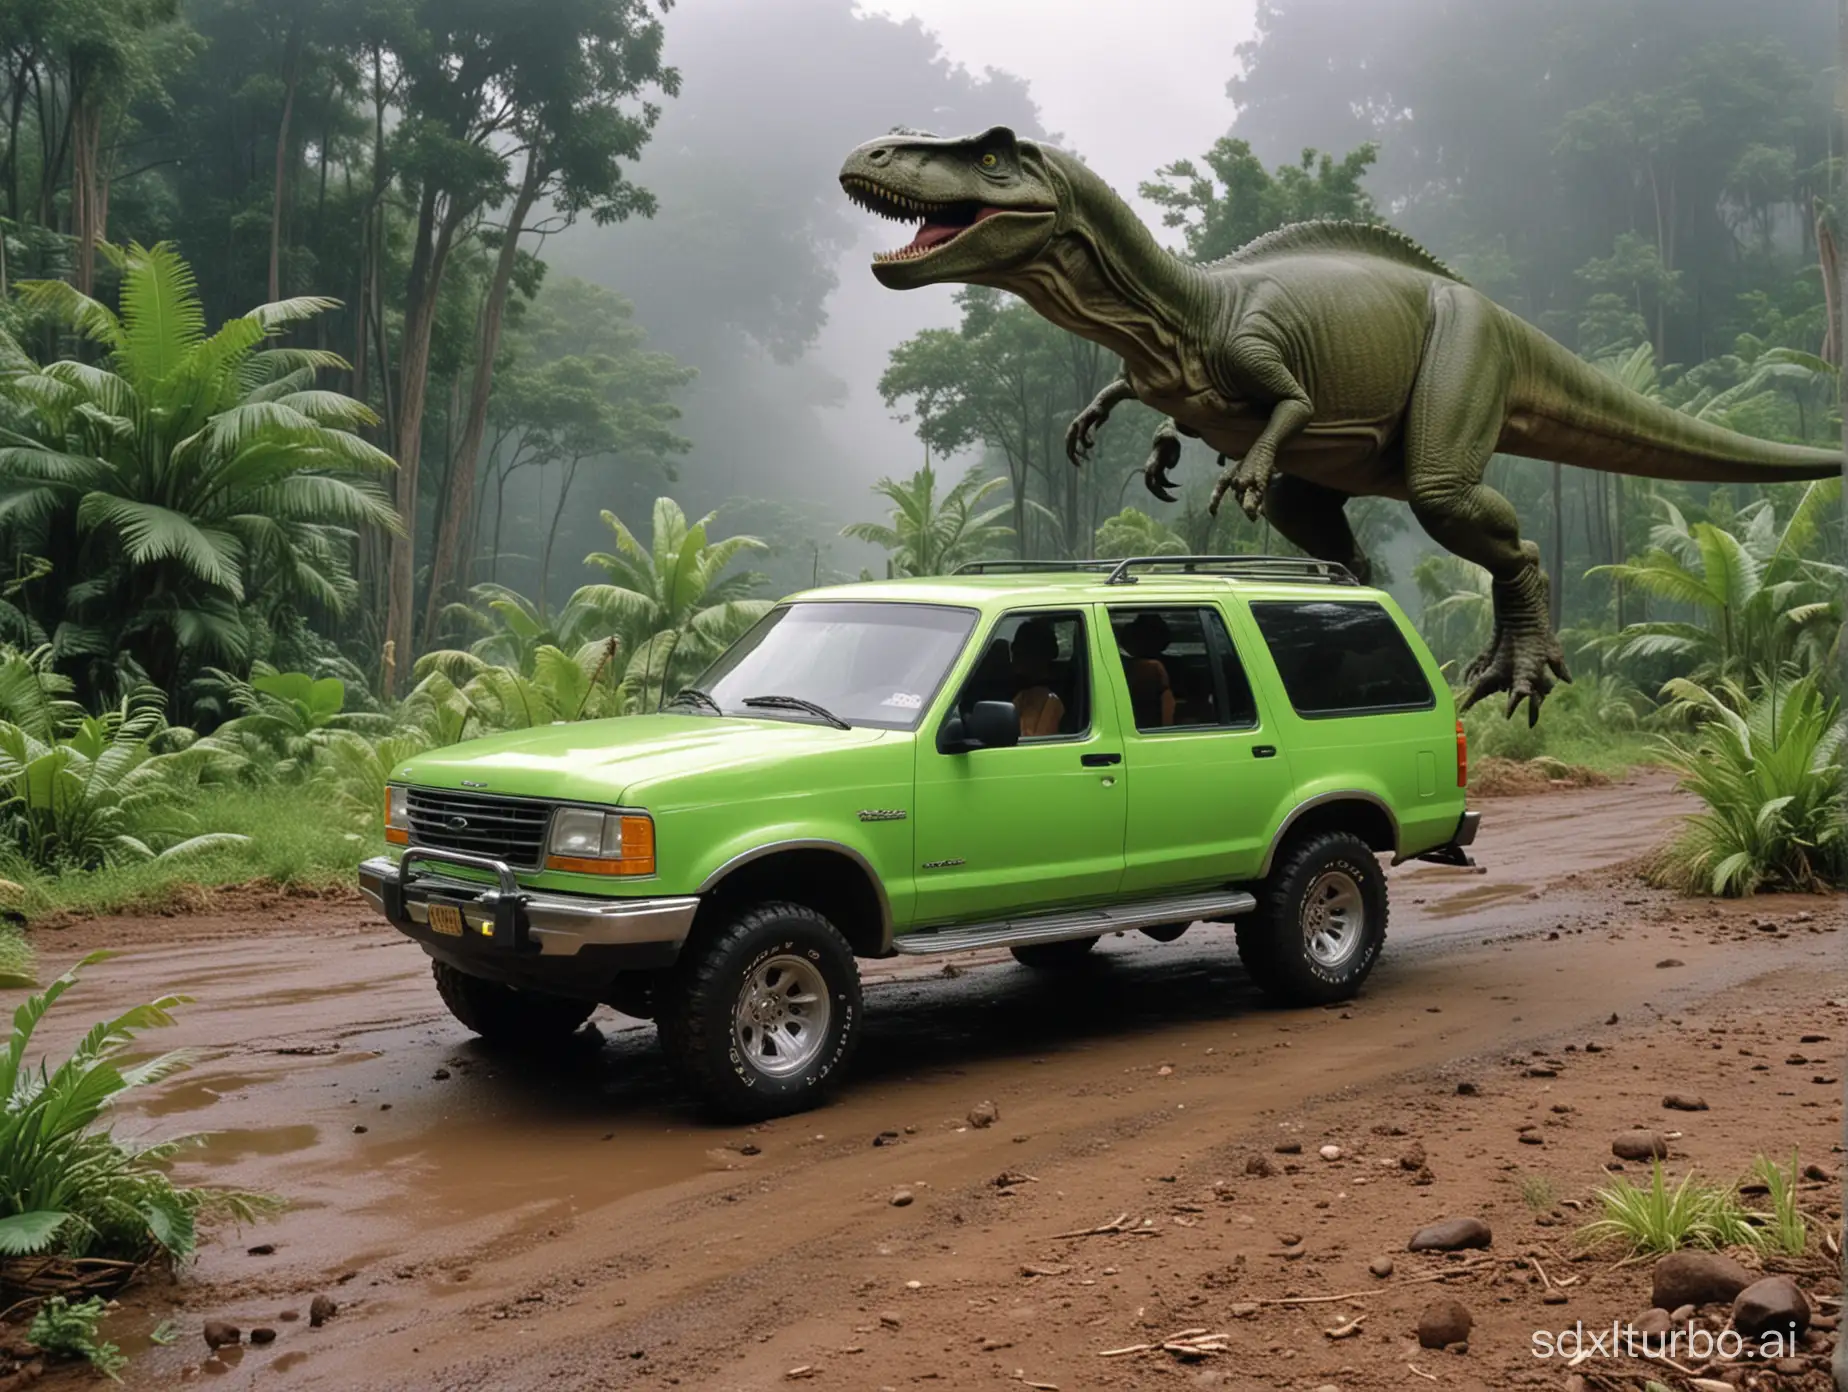 Neon-Green-Ford-Explorer-in-Jurassic-Park-Setting